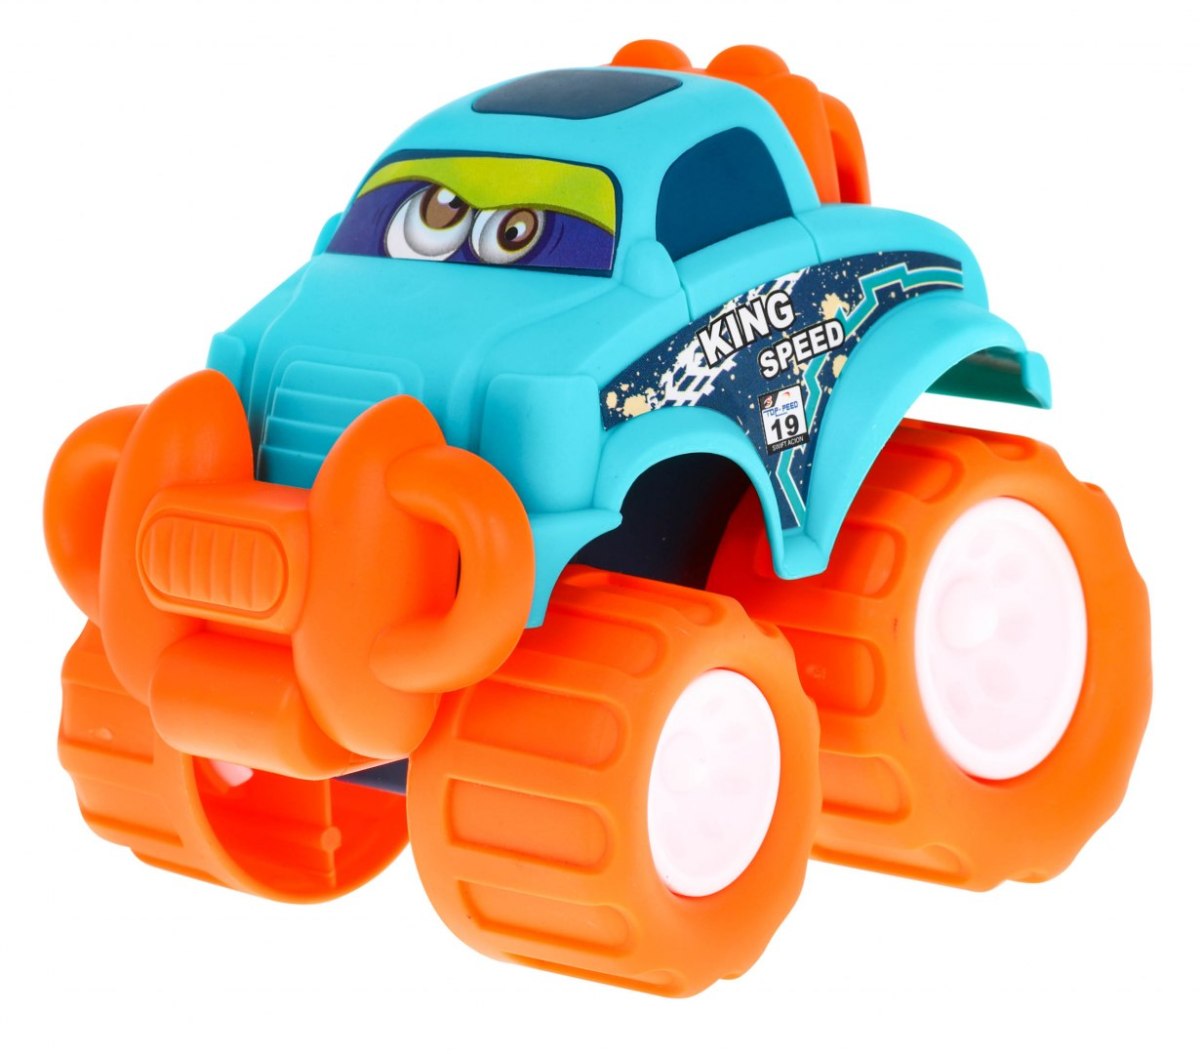 Zestaw 3 autek terenowych Little Monster dla dzieci 3+ Napęd bez baterii + Duże koła